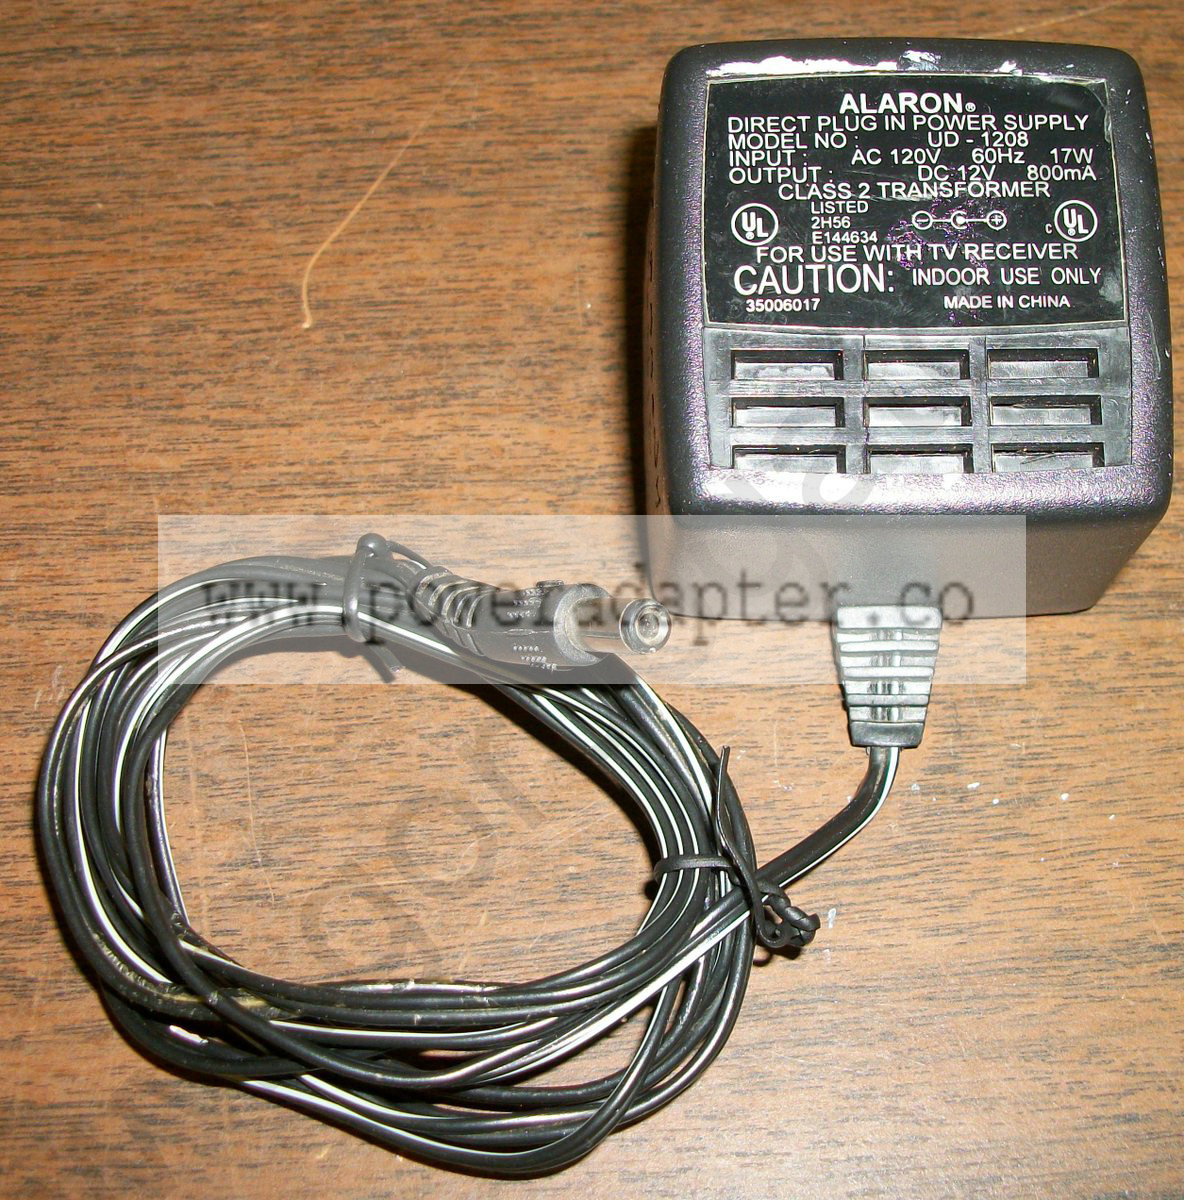 Alaron TV Receiver AC Adapter UD-1208 DC 12V [UD-1208] Input: AC 120V 60Hz 17W, Output: DC 12V 800mA. Model No.: UD-